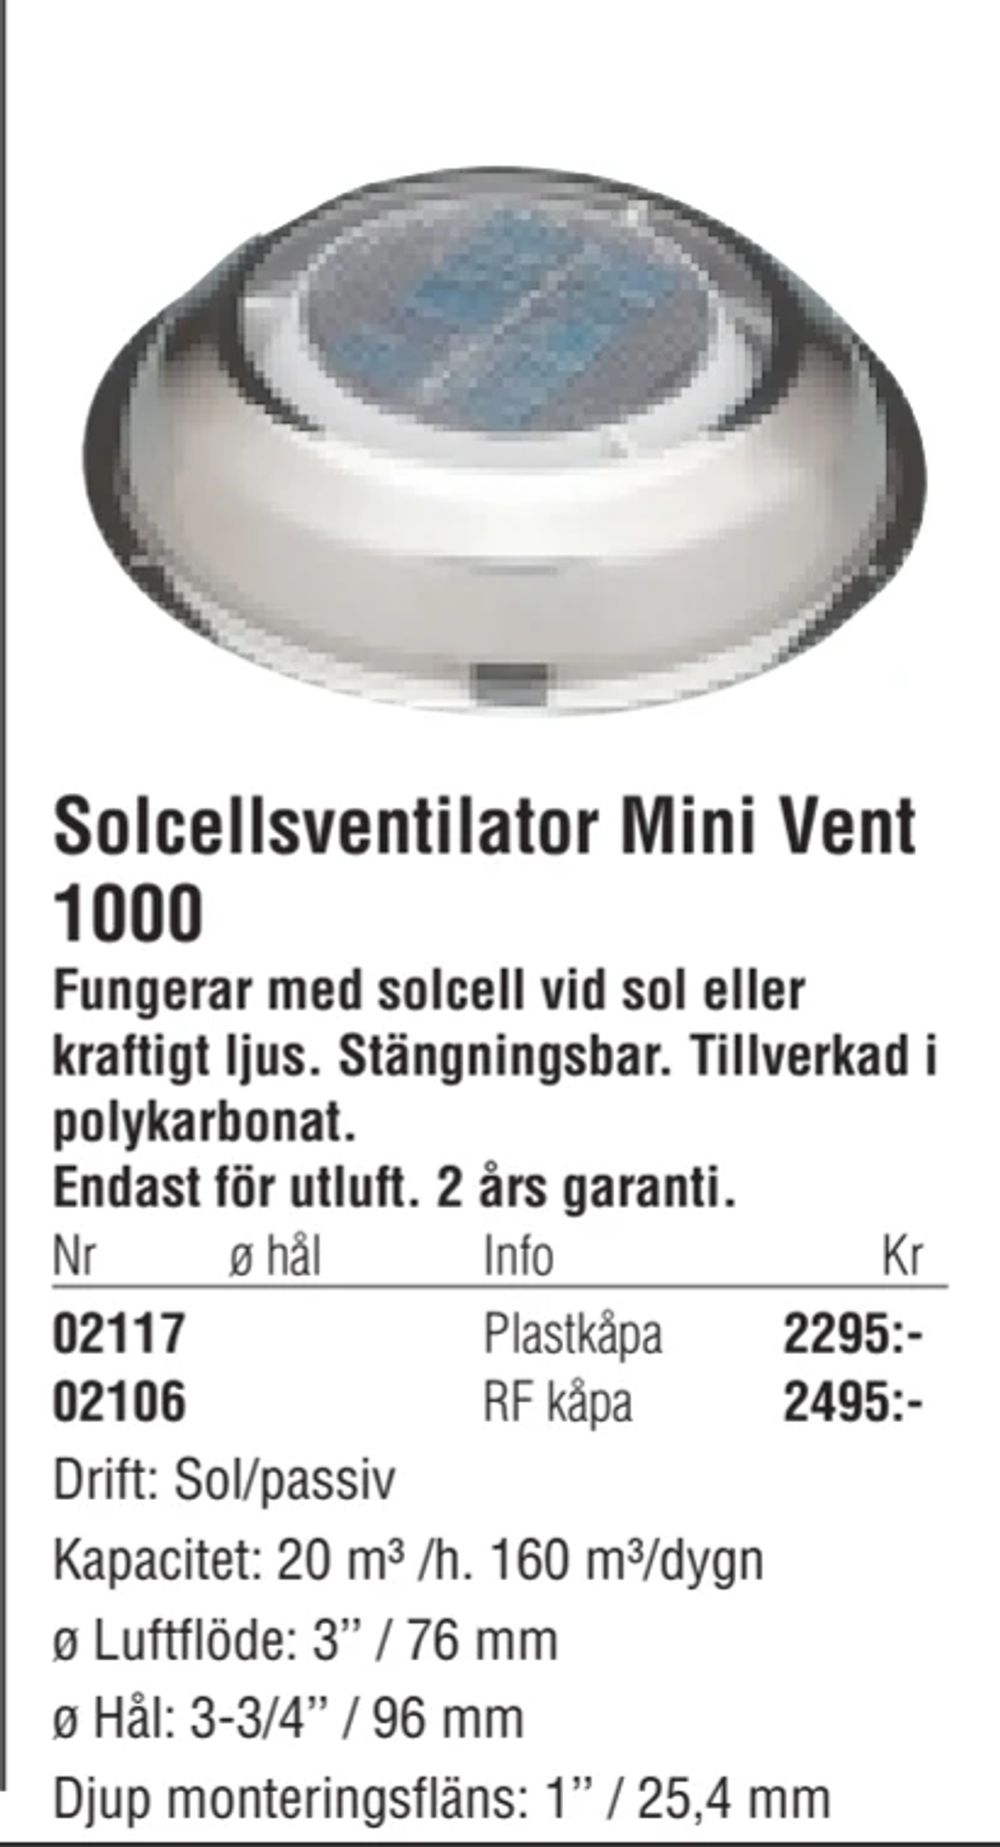 Erbjudanden på Solcellsventilator Mini Vent 1000 från Erlandsons Brygga för 2 295 kr